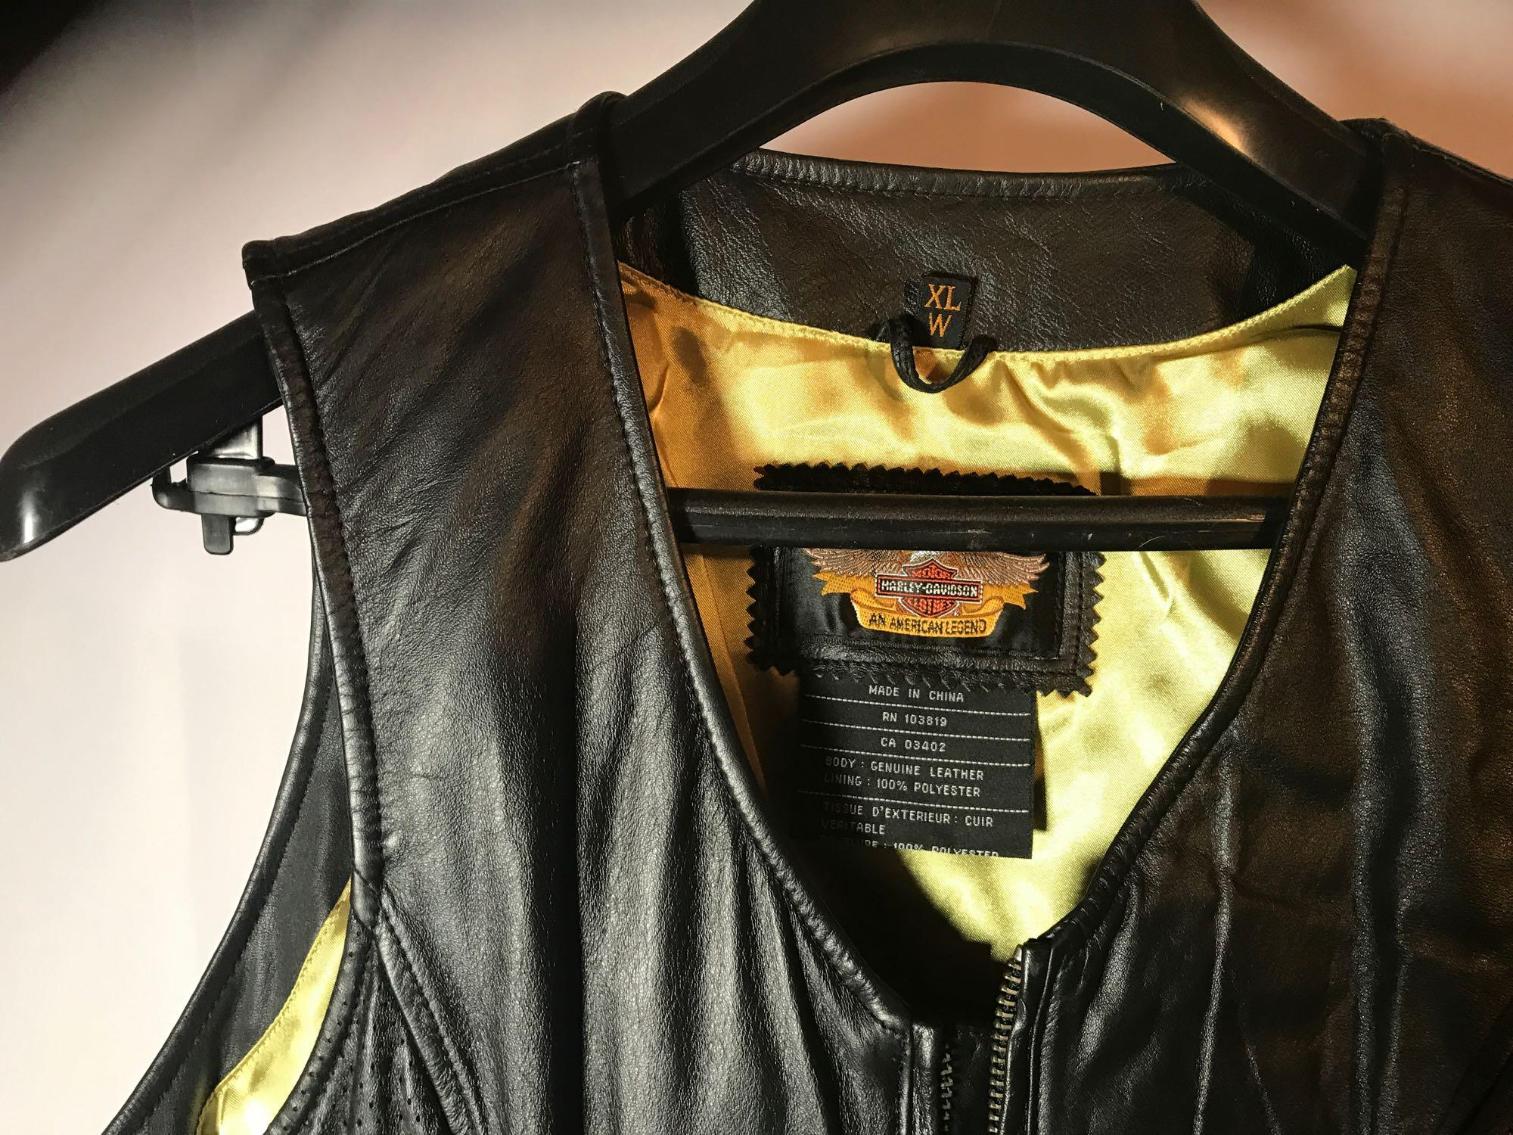 Image for Vintage Harley Davidson Leather Vest and Jacket Set